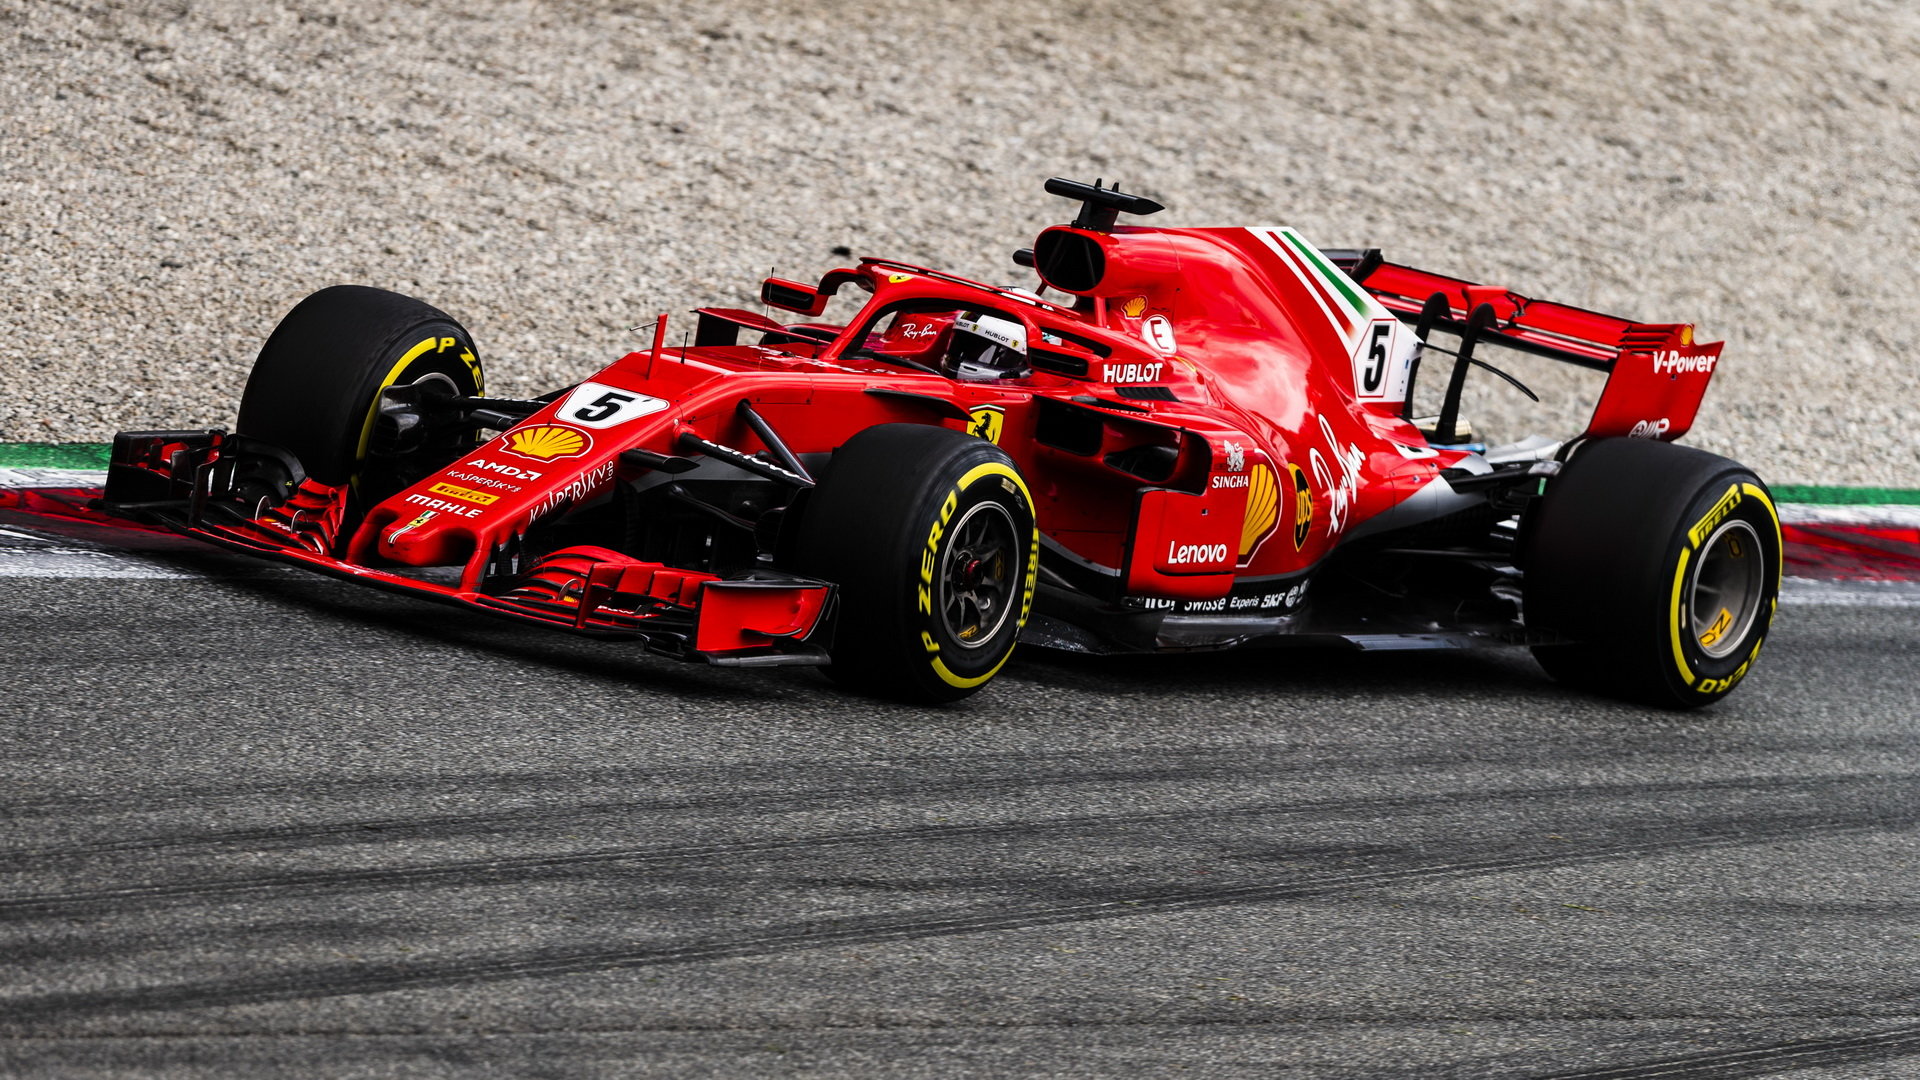 Sebastian Vettel v závodě v Monze